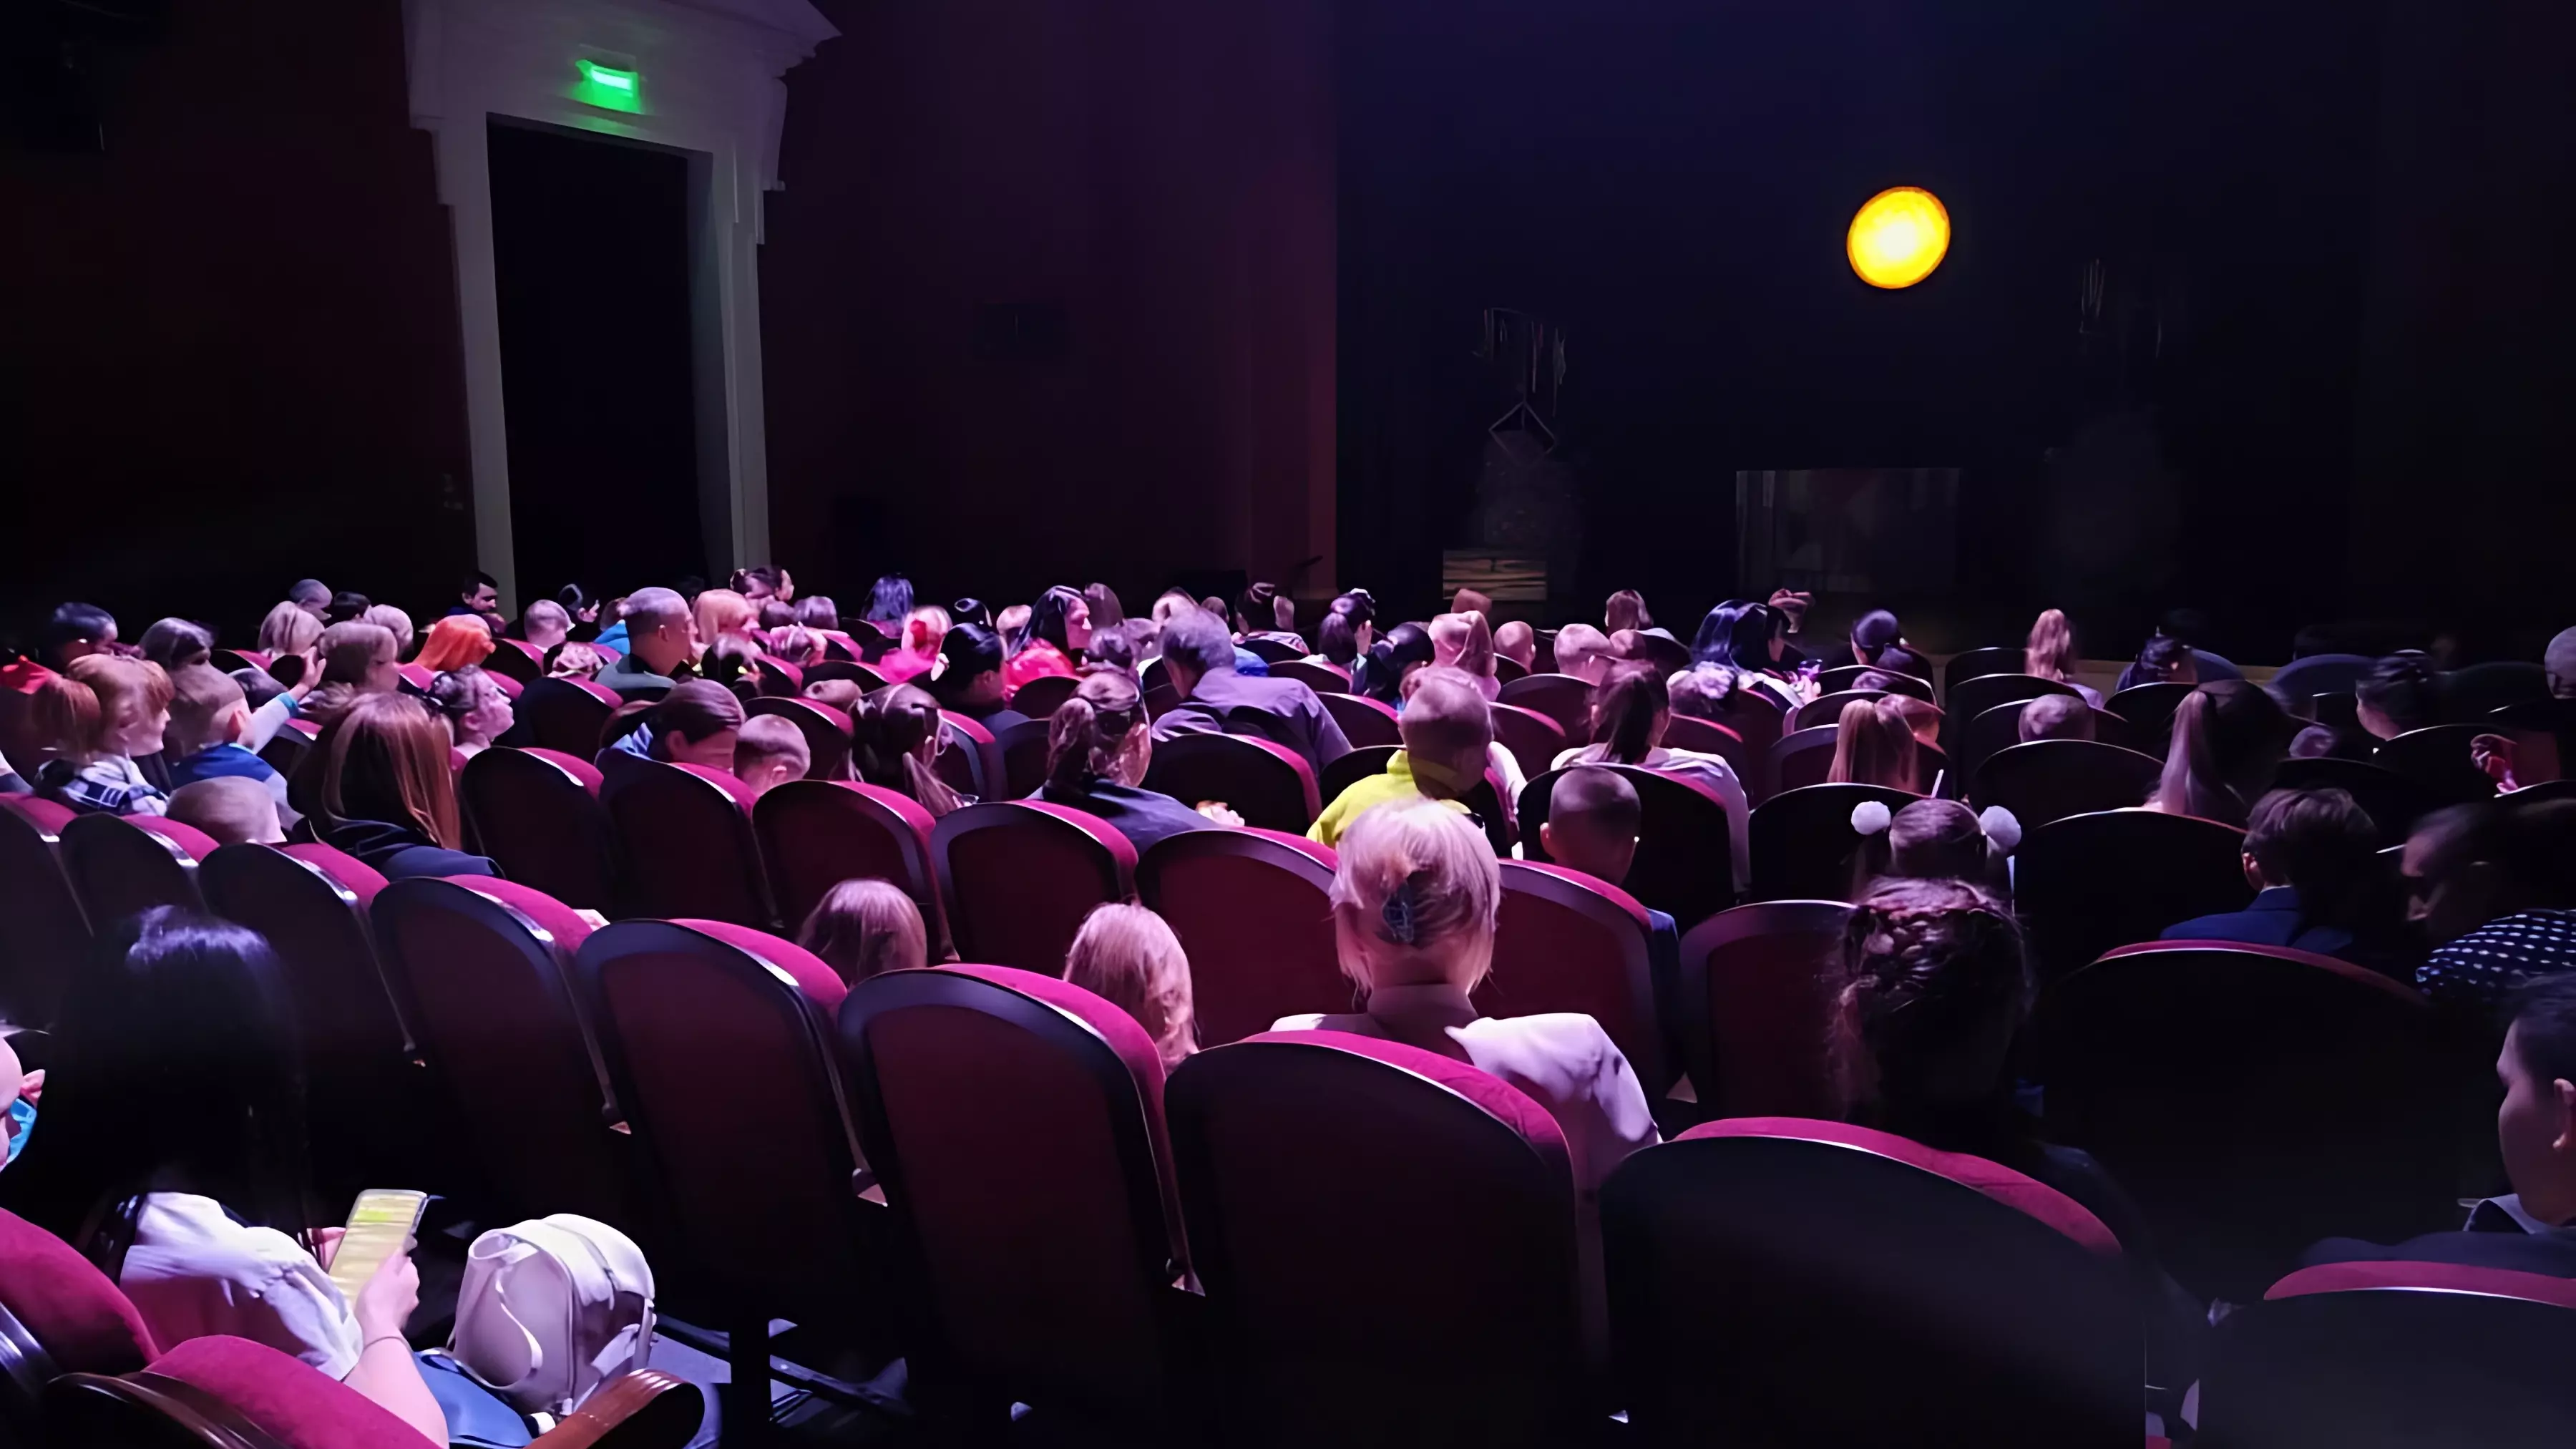 80 семей посмотрели представление в кукольном театре